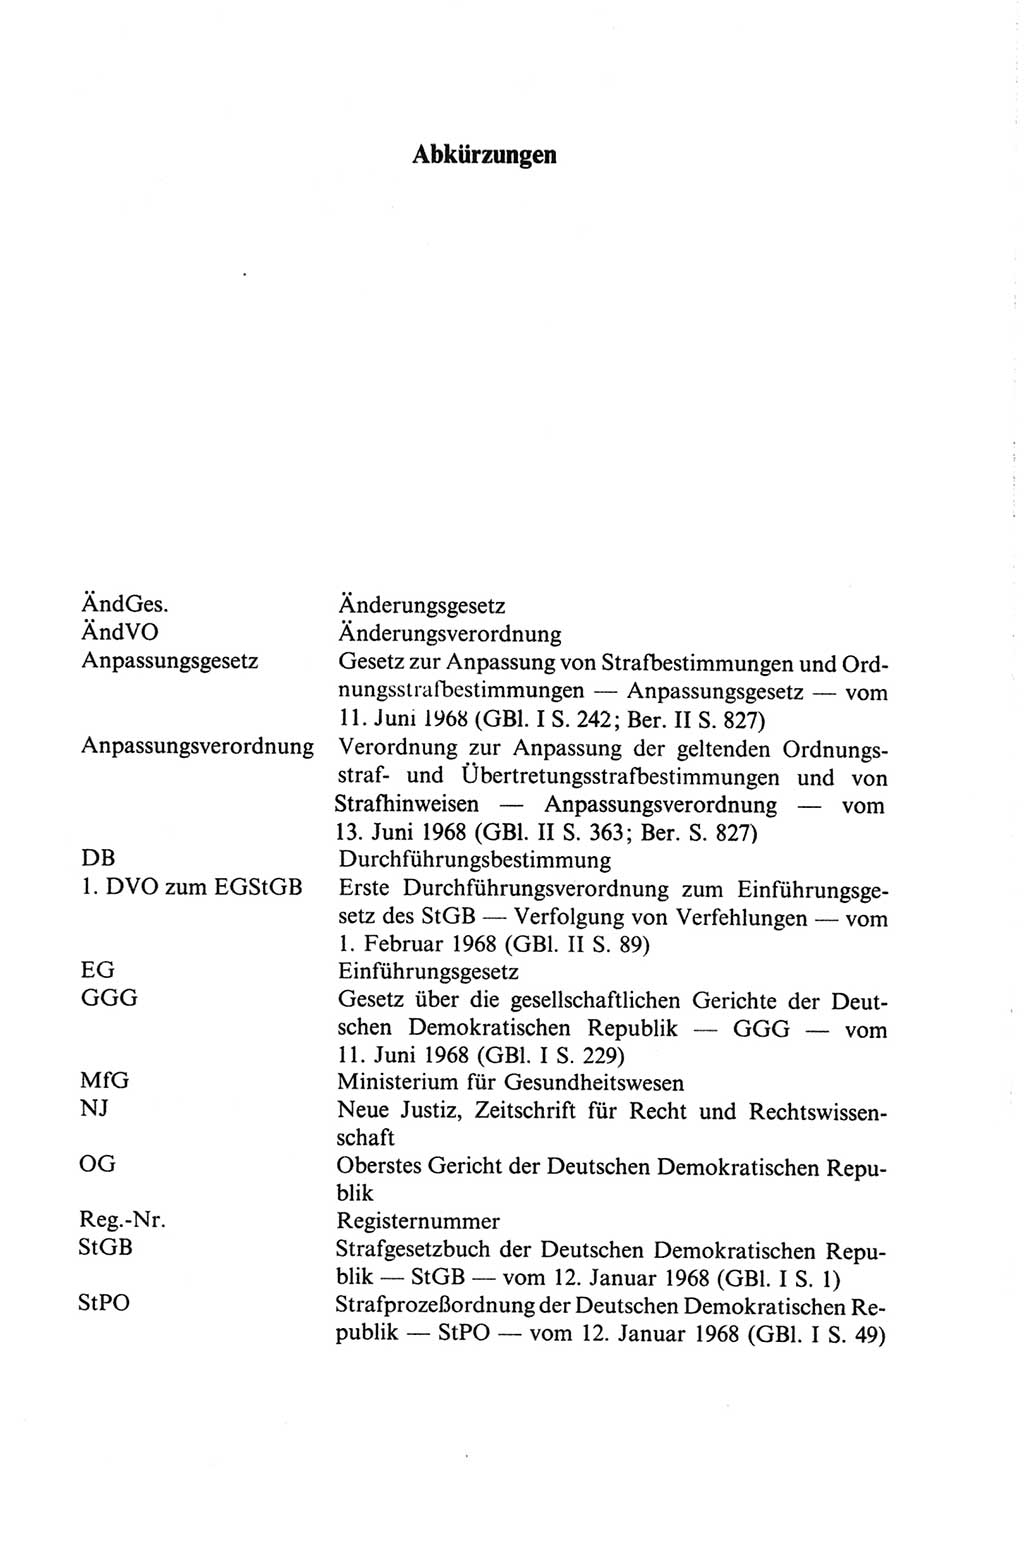 Strafgesetzbuch (StGB) der Deutschen Demokratischen Republik (DDR) und angrenzende Gesetze und Bestimmungen 1968, Seite 23 (StGB Ges. Best. DDR 1968, S. 23)